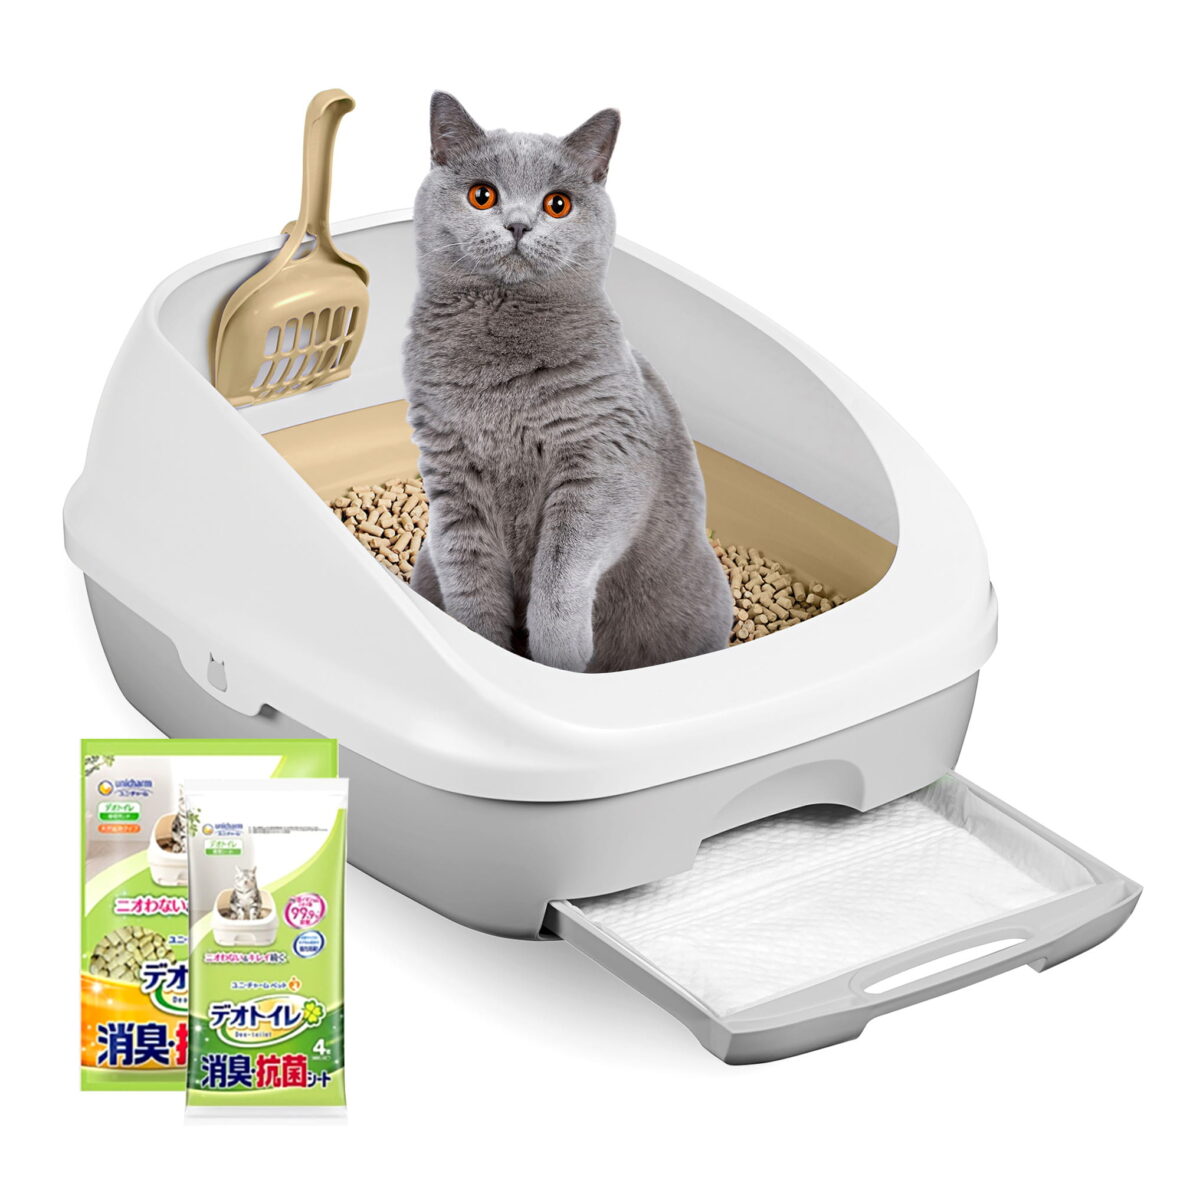 Klasikinė 2 pakopų kačių tualetas (dėžė + 1,6 kg granulės + 4 sugeriantys įklotai) Tidy cats Breeze litter box Originali versija iš Japonijos. Japoniškas kačių tualetas